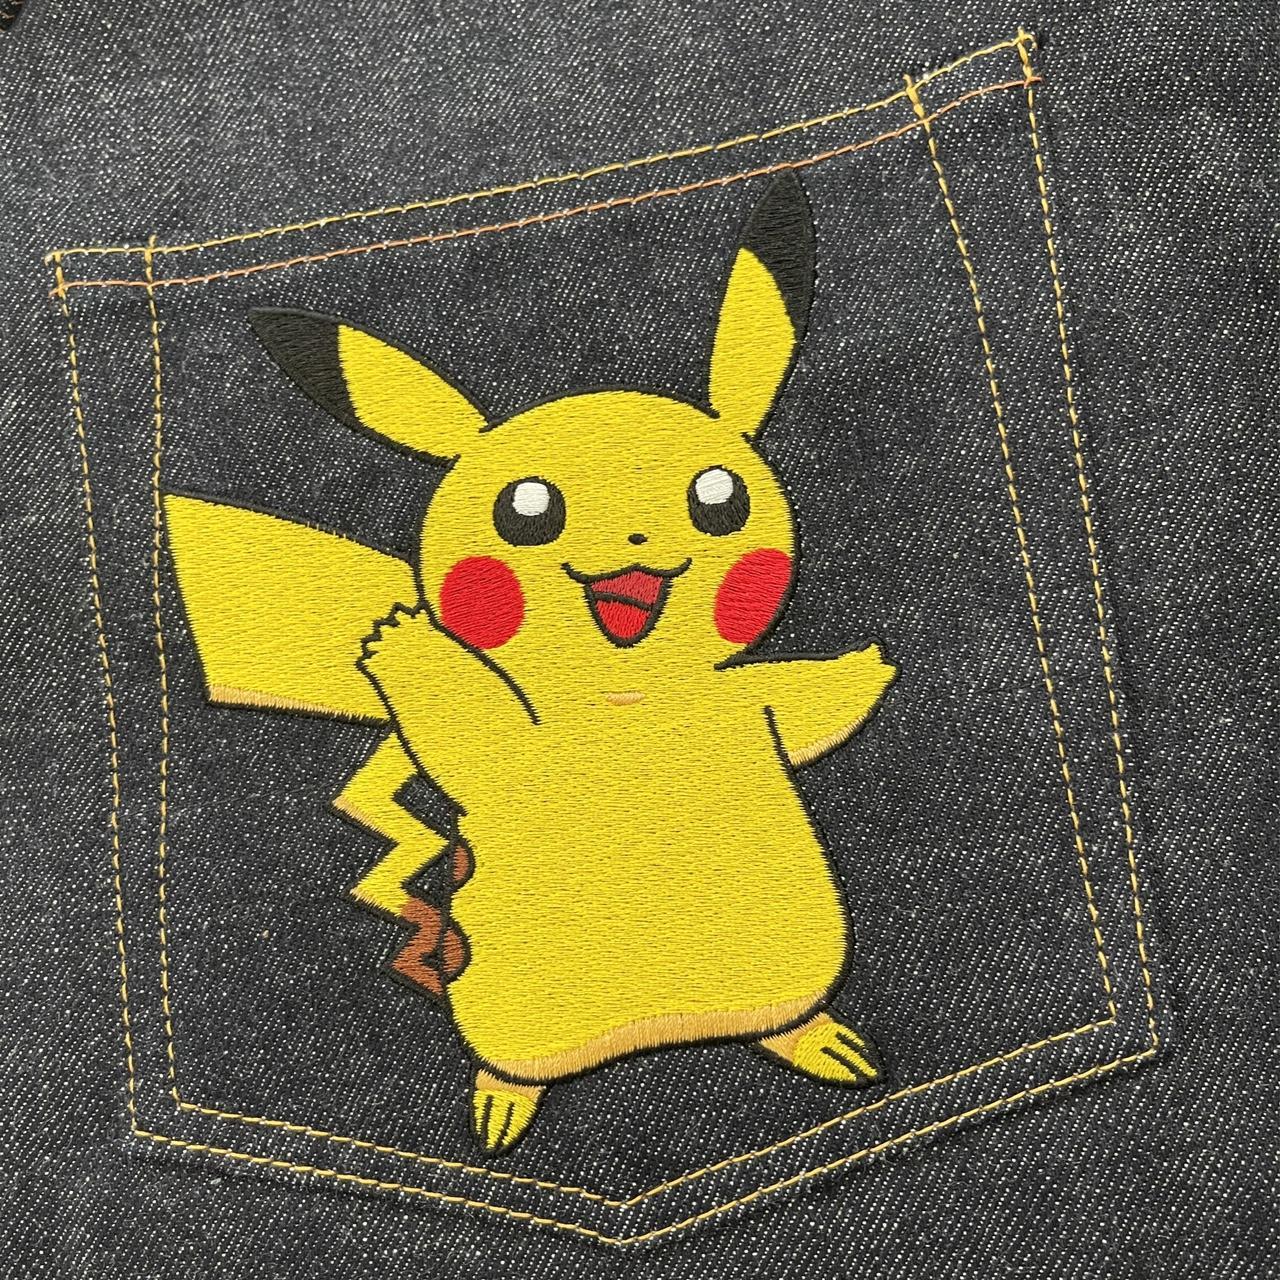 Evisu Pokémon Pikachu Jeans